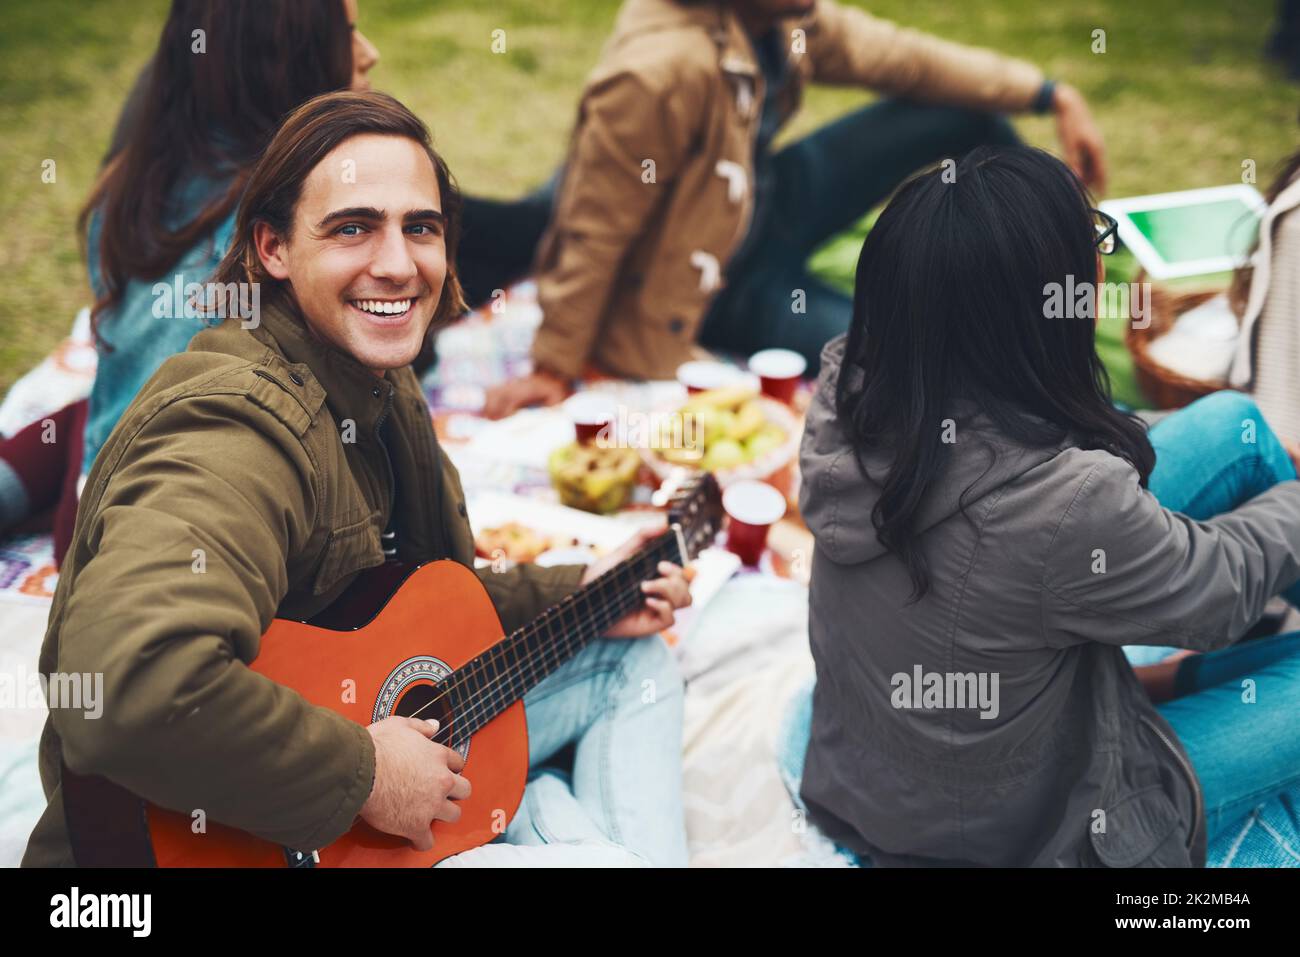 È il momento di riprodurre alcuni brani. Ritratto di un giovane allegro che sta per suonare la chitarra in un picnic con i suoi amici all'aperto durante il giorno. Foto Stock